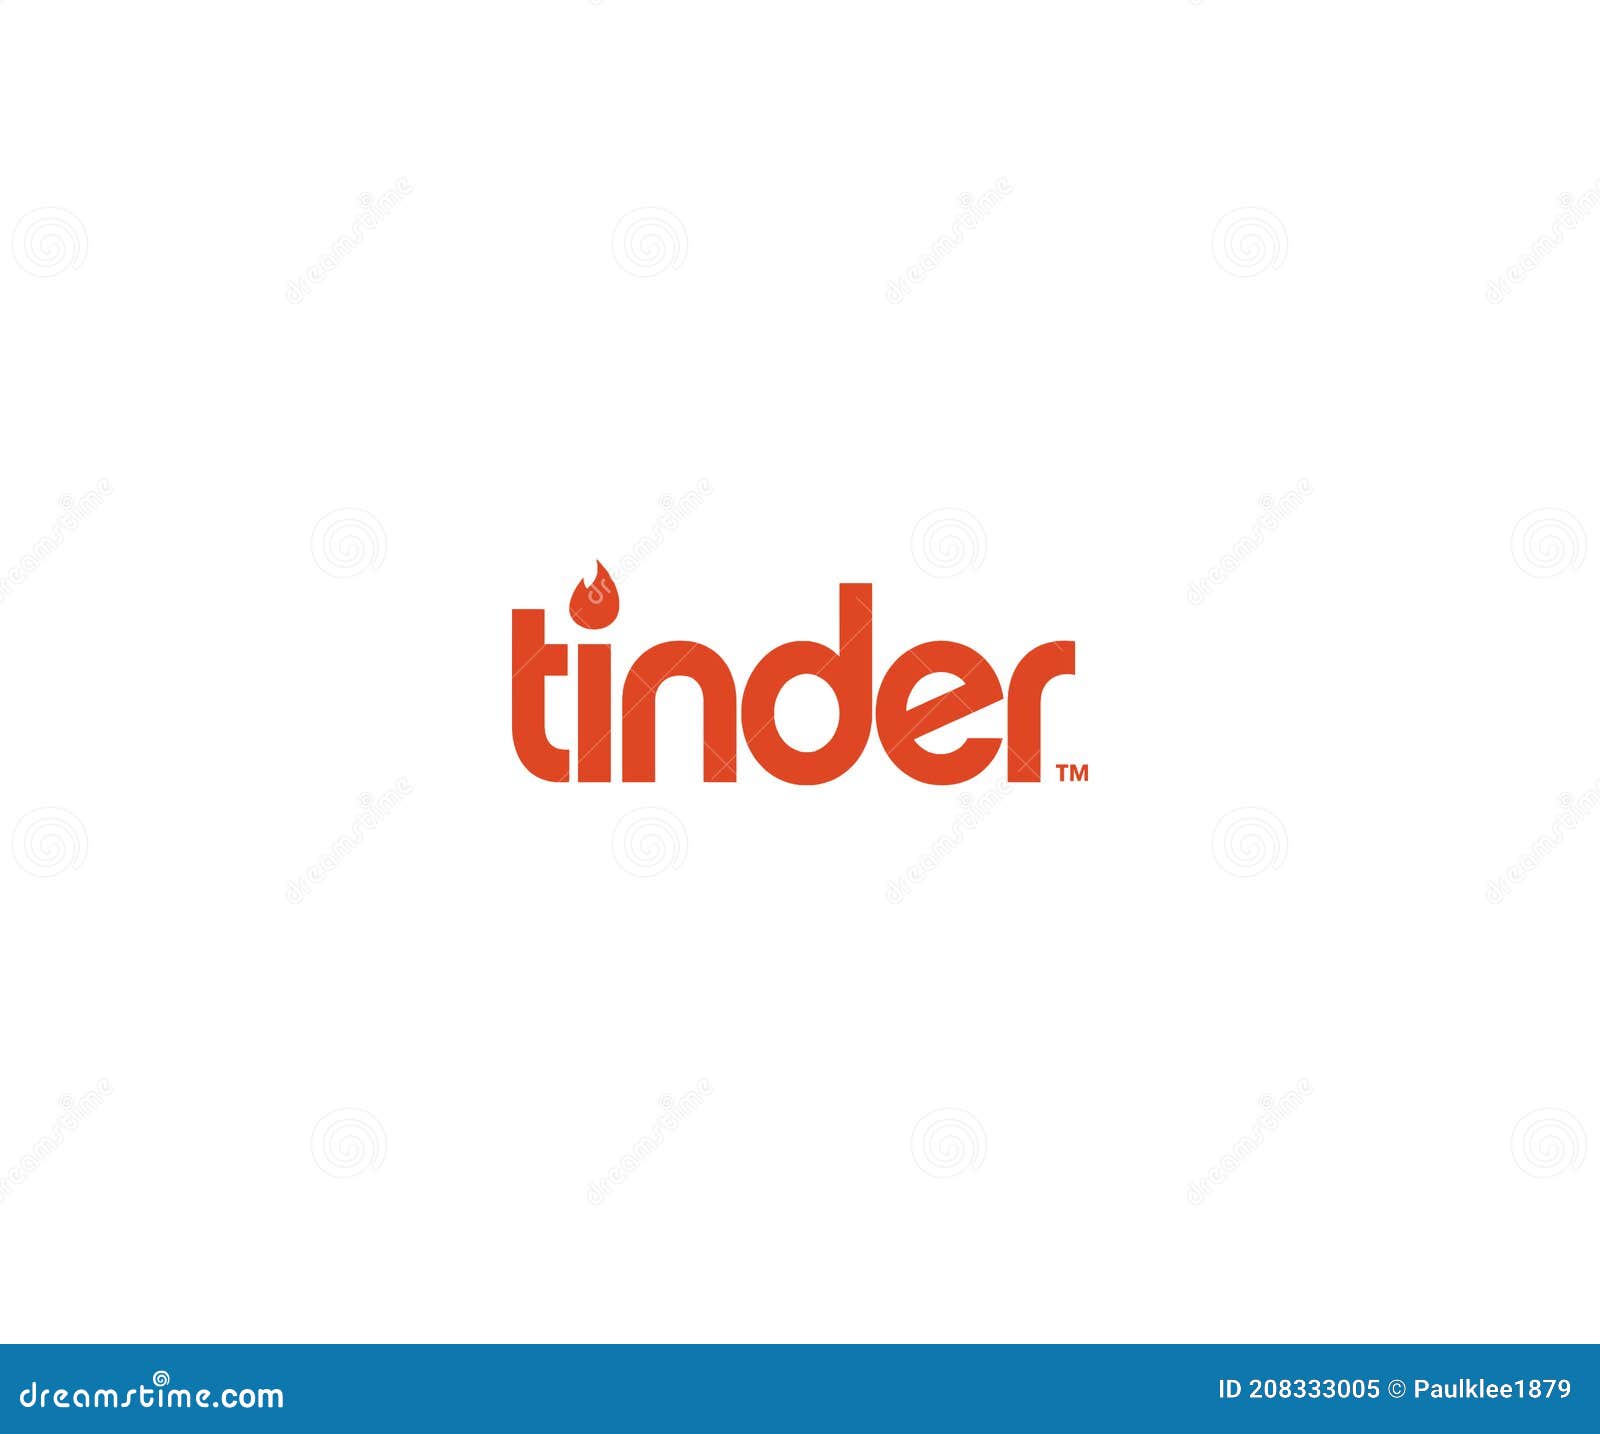 Tinder logo white